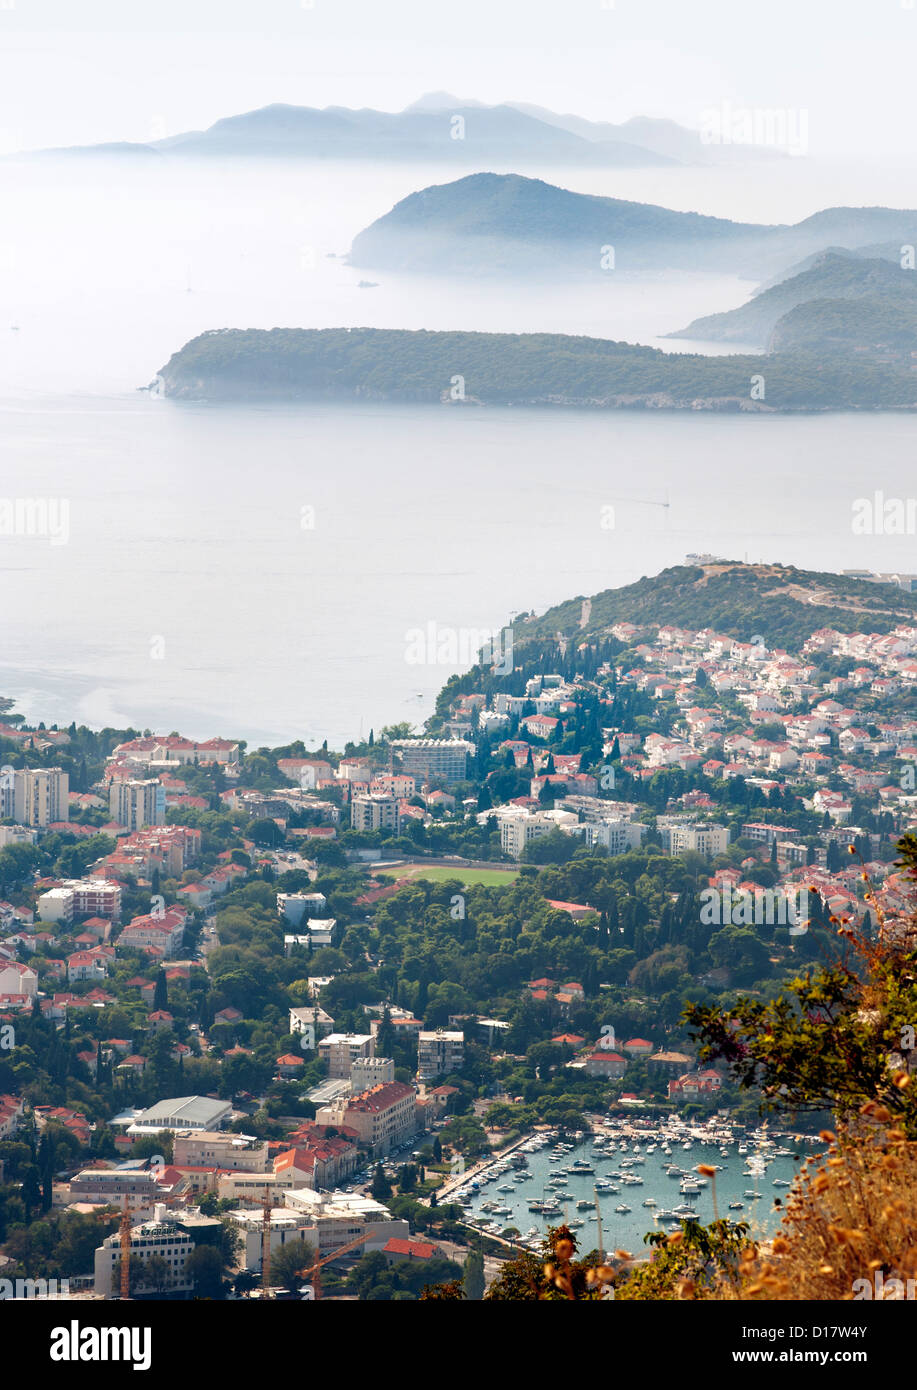 Vue depuis le mont Srd sur une partie de la ville de Dubrovnik et les îles dans la mer Adriatique en Croatie. Banque D'Images